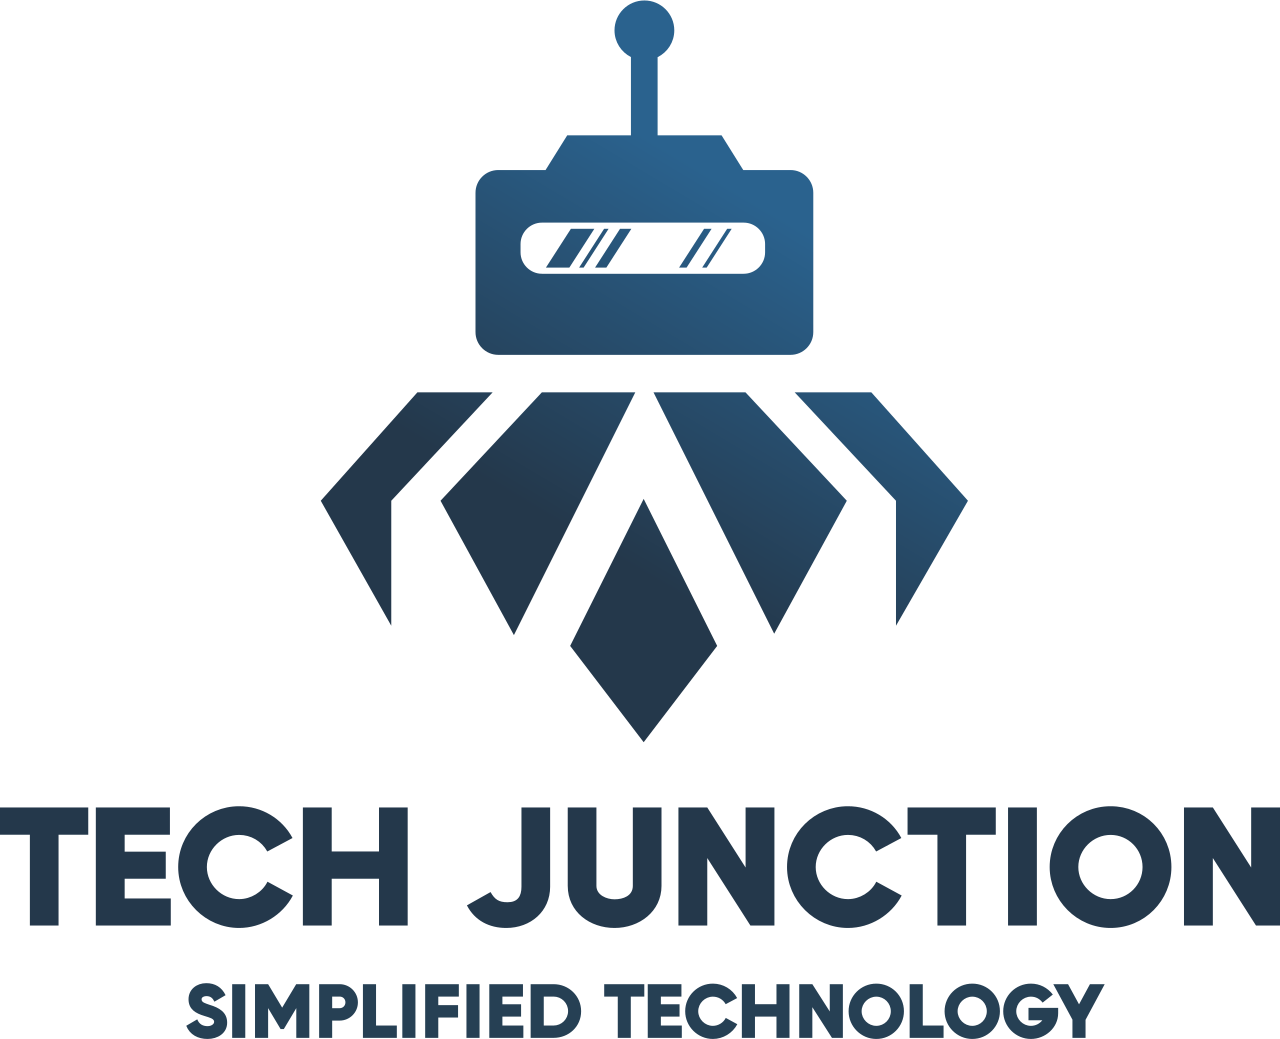 Tech Junction's logo